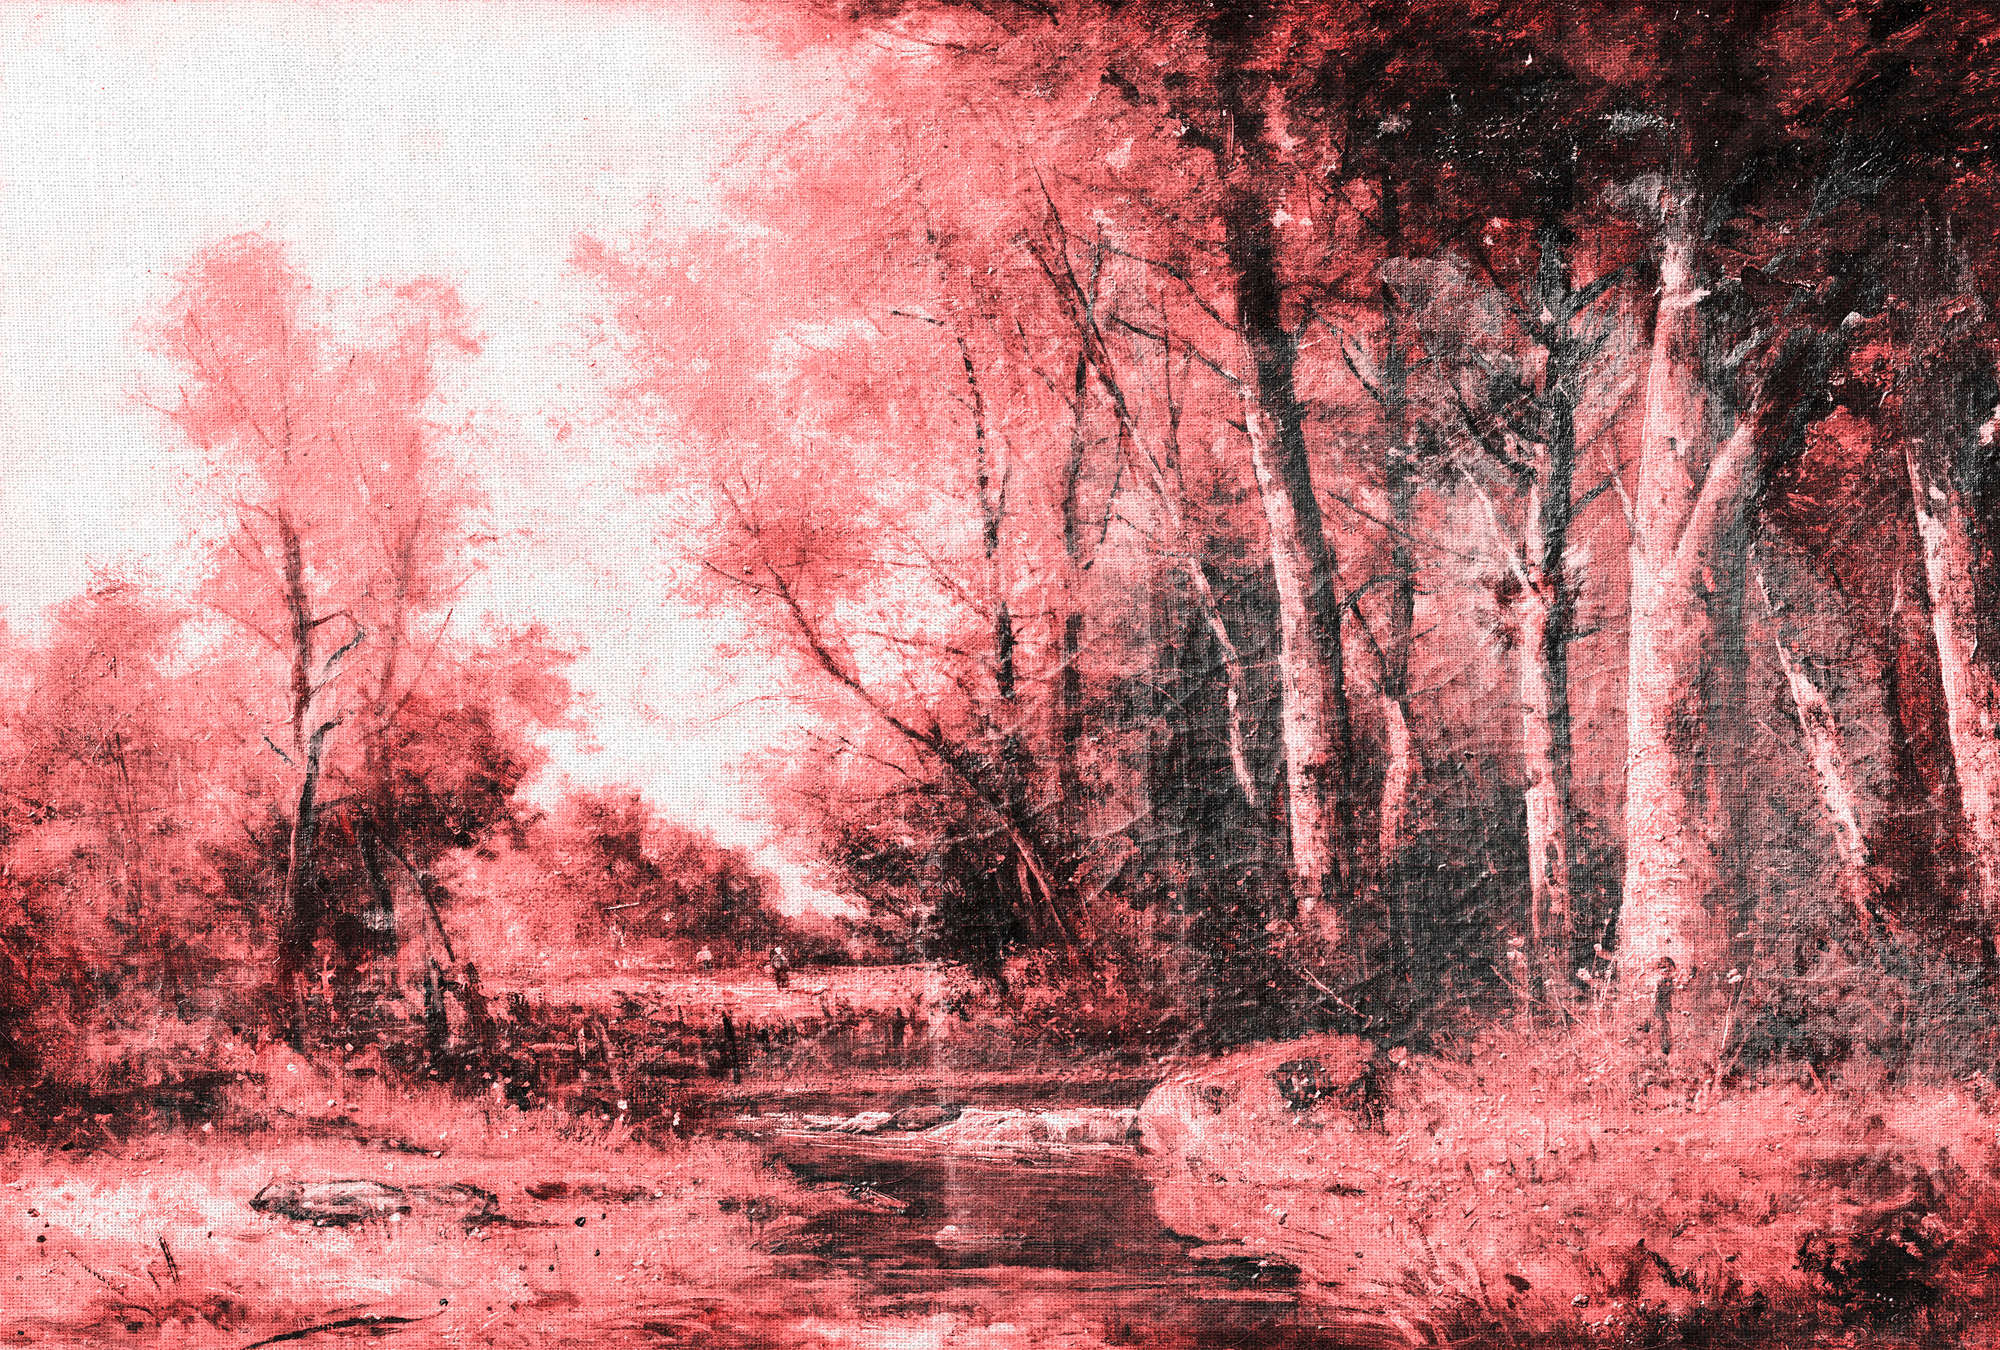             Fototapete Landschaft-Gemälde, Wald-Panorama – Rosa, Weiß, Schwarz
        